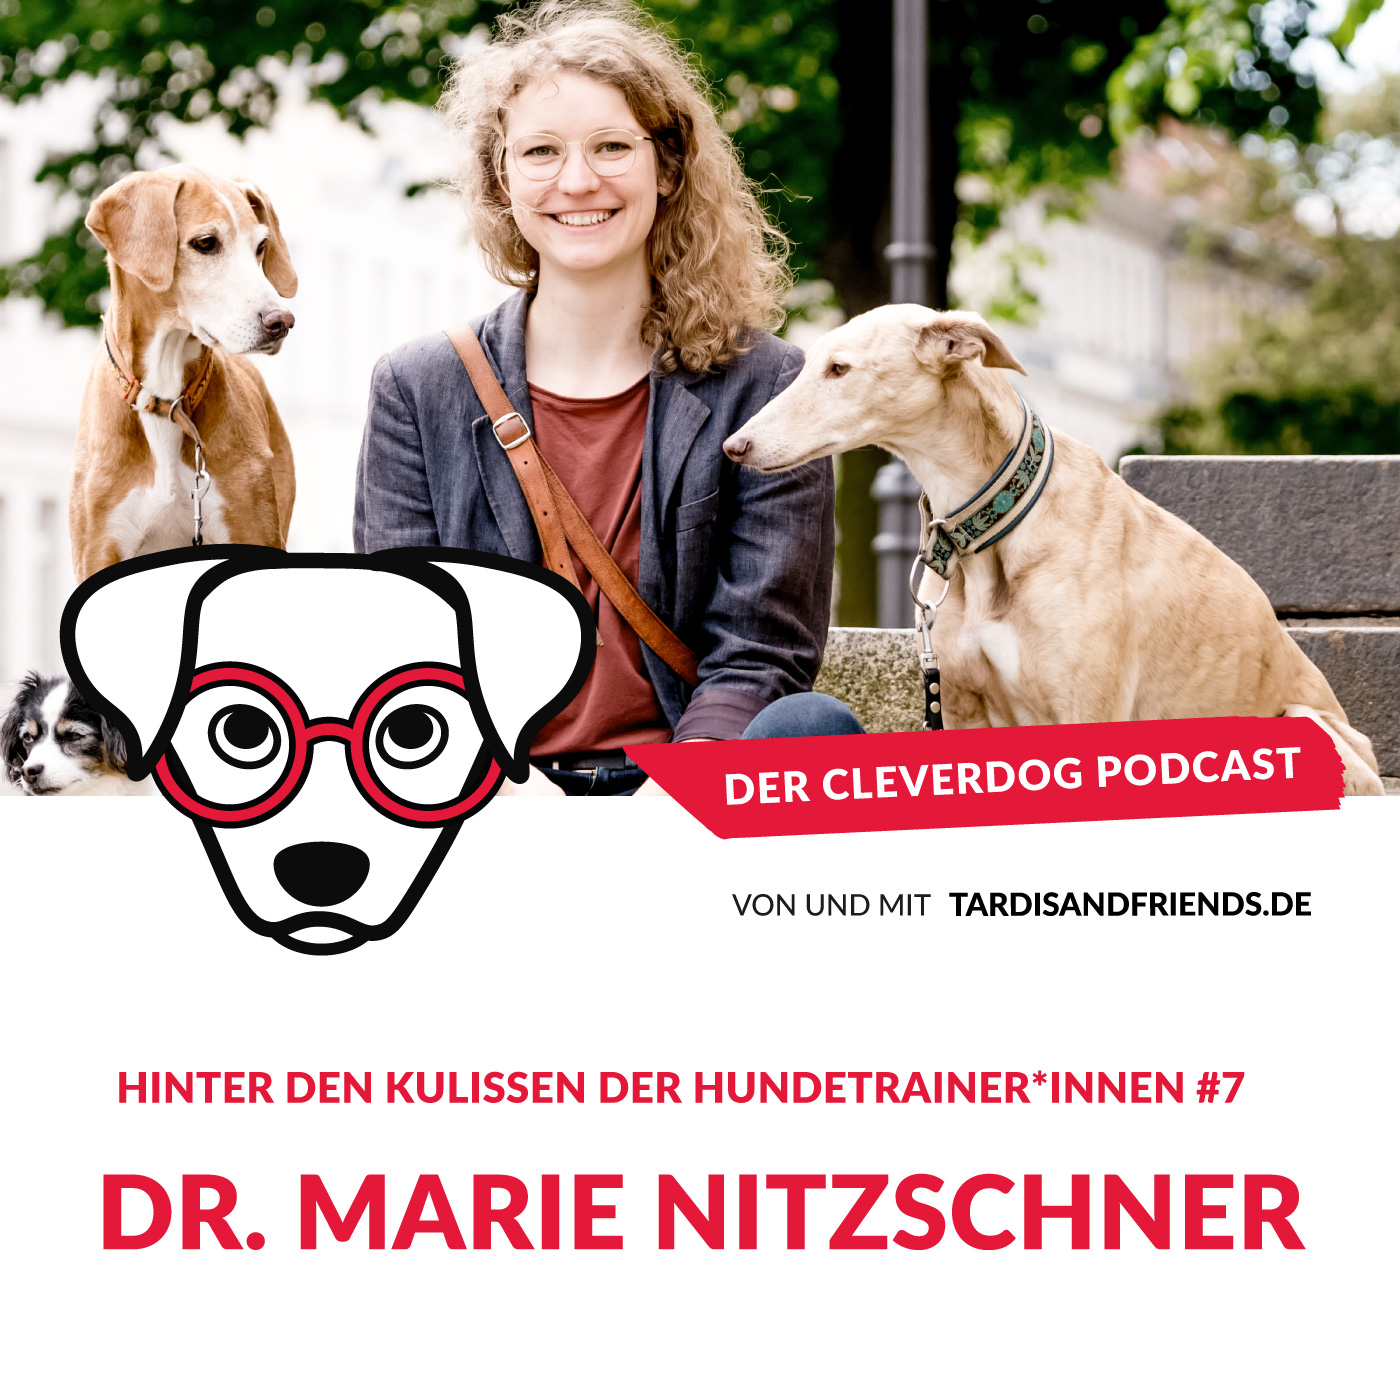 Dr. Marie Nitzschner – Hinter den Kulissen der Hundetrainer und Hundetrainerinnen #7